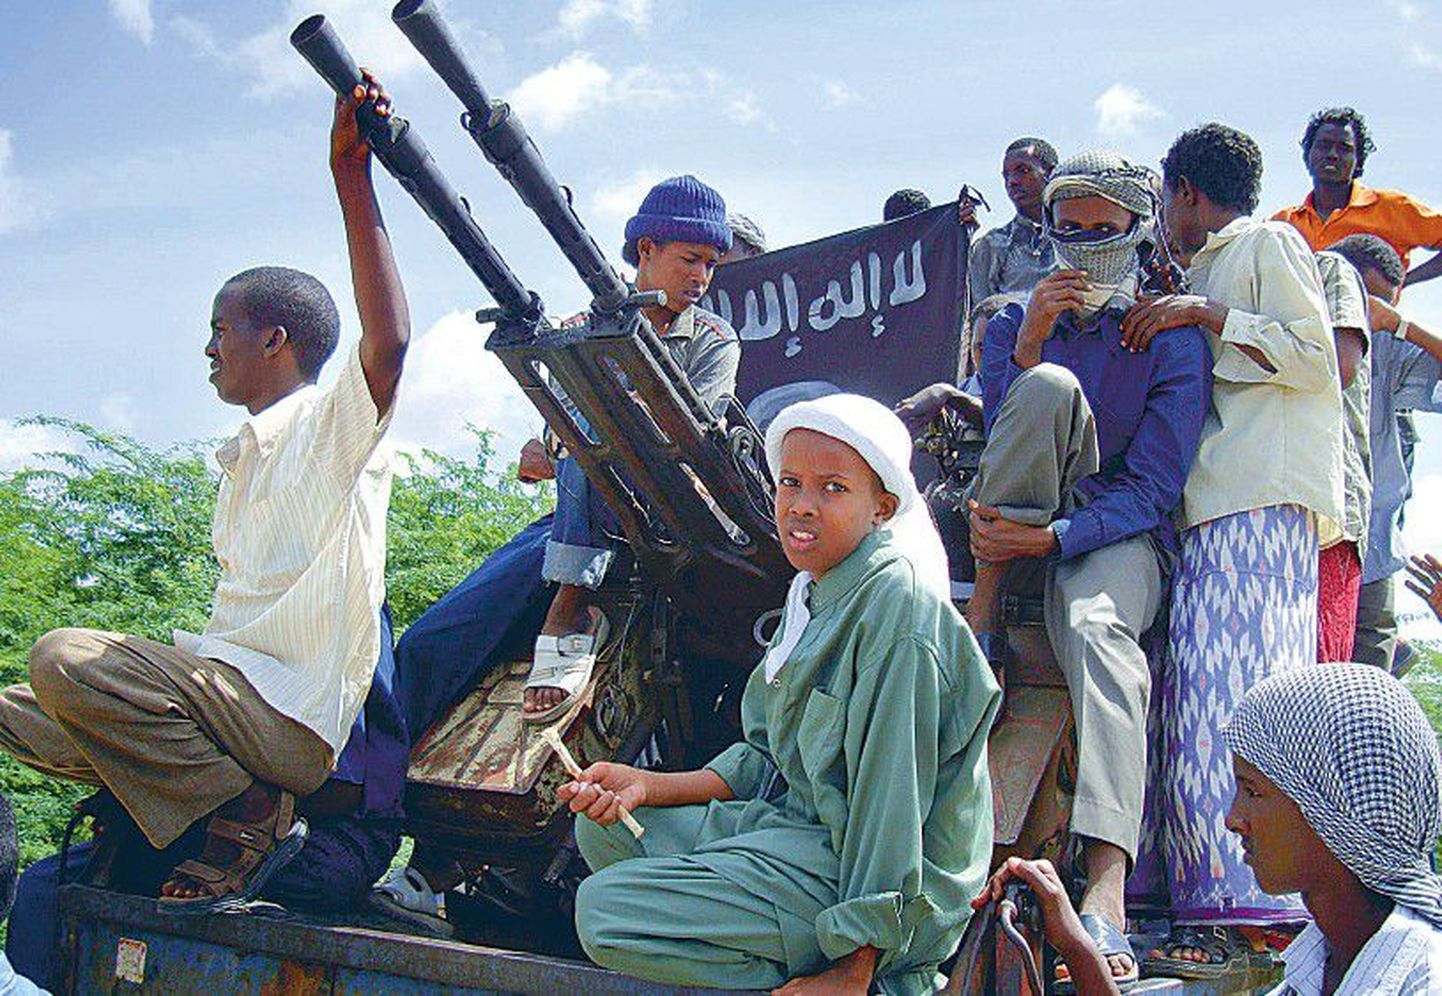 Islamistlike võitlejate patrull Somaalia pealinnas Mogadishus. Sellest maailma seadusetuimast riigist leiab kõikvõimalikke hädasid alates piraatidest ja lõpetades lapssõduritega.